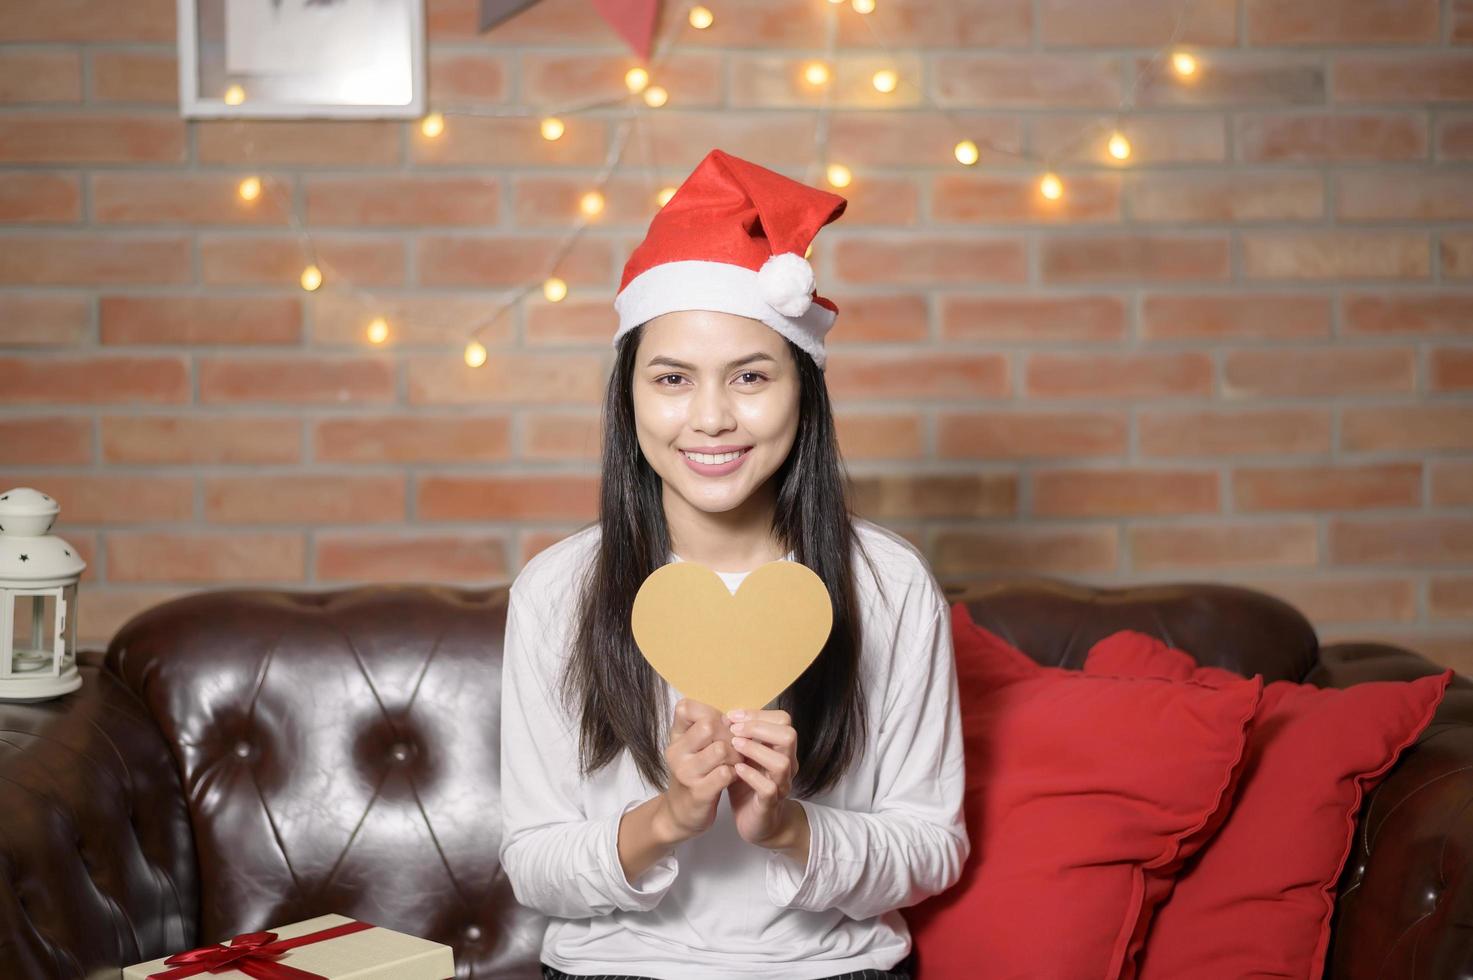 jovem mulher sorridente usando chapéu de papai noel vermelho mostrando um modelo em forma de coração no dia de natal, conceito de férias. foto